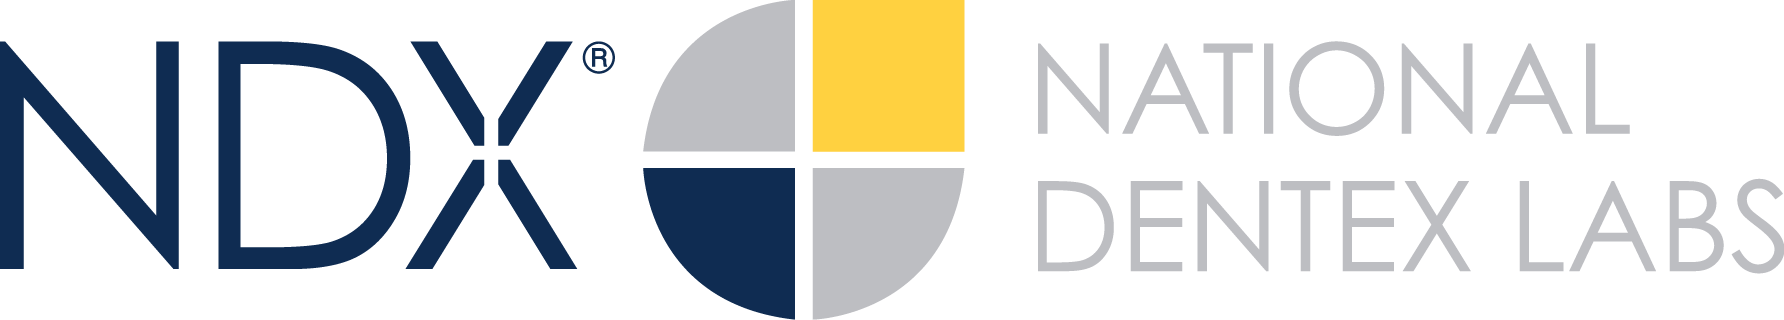 NDX National Dentex Labs logo